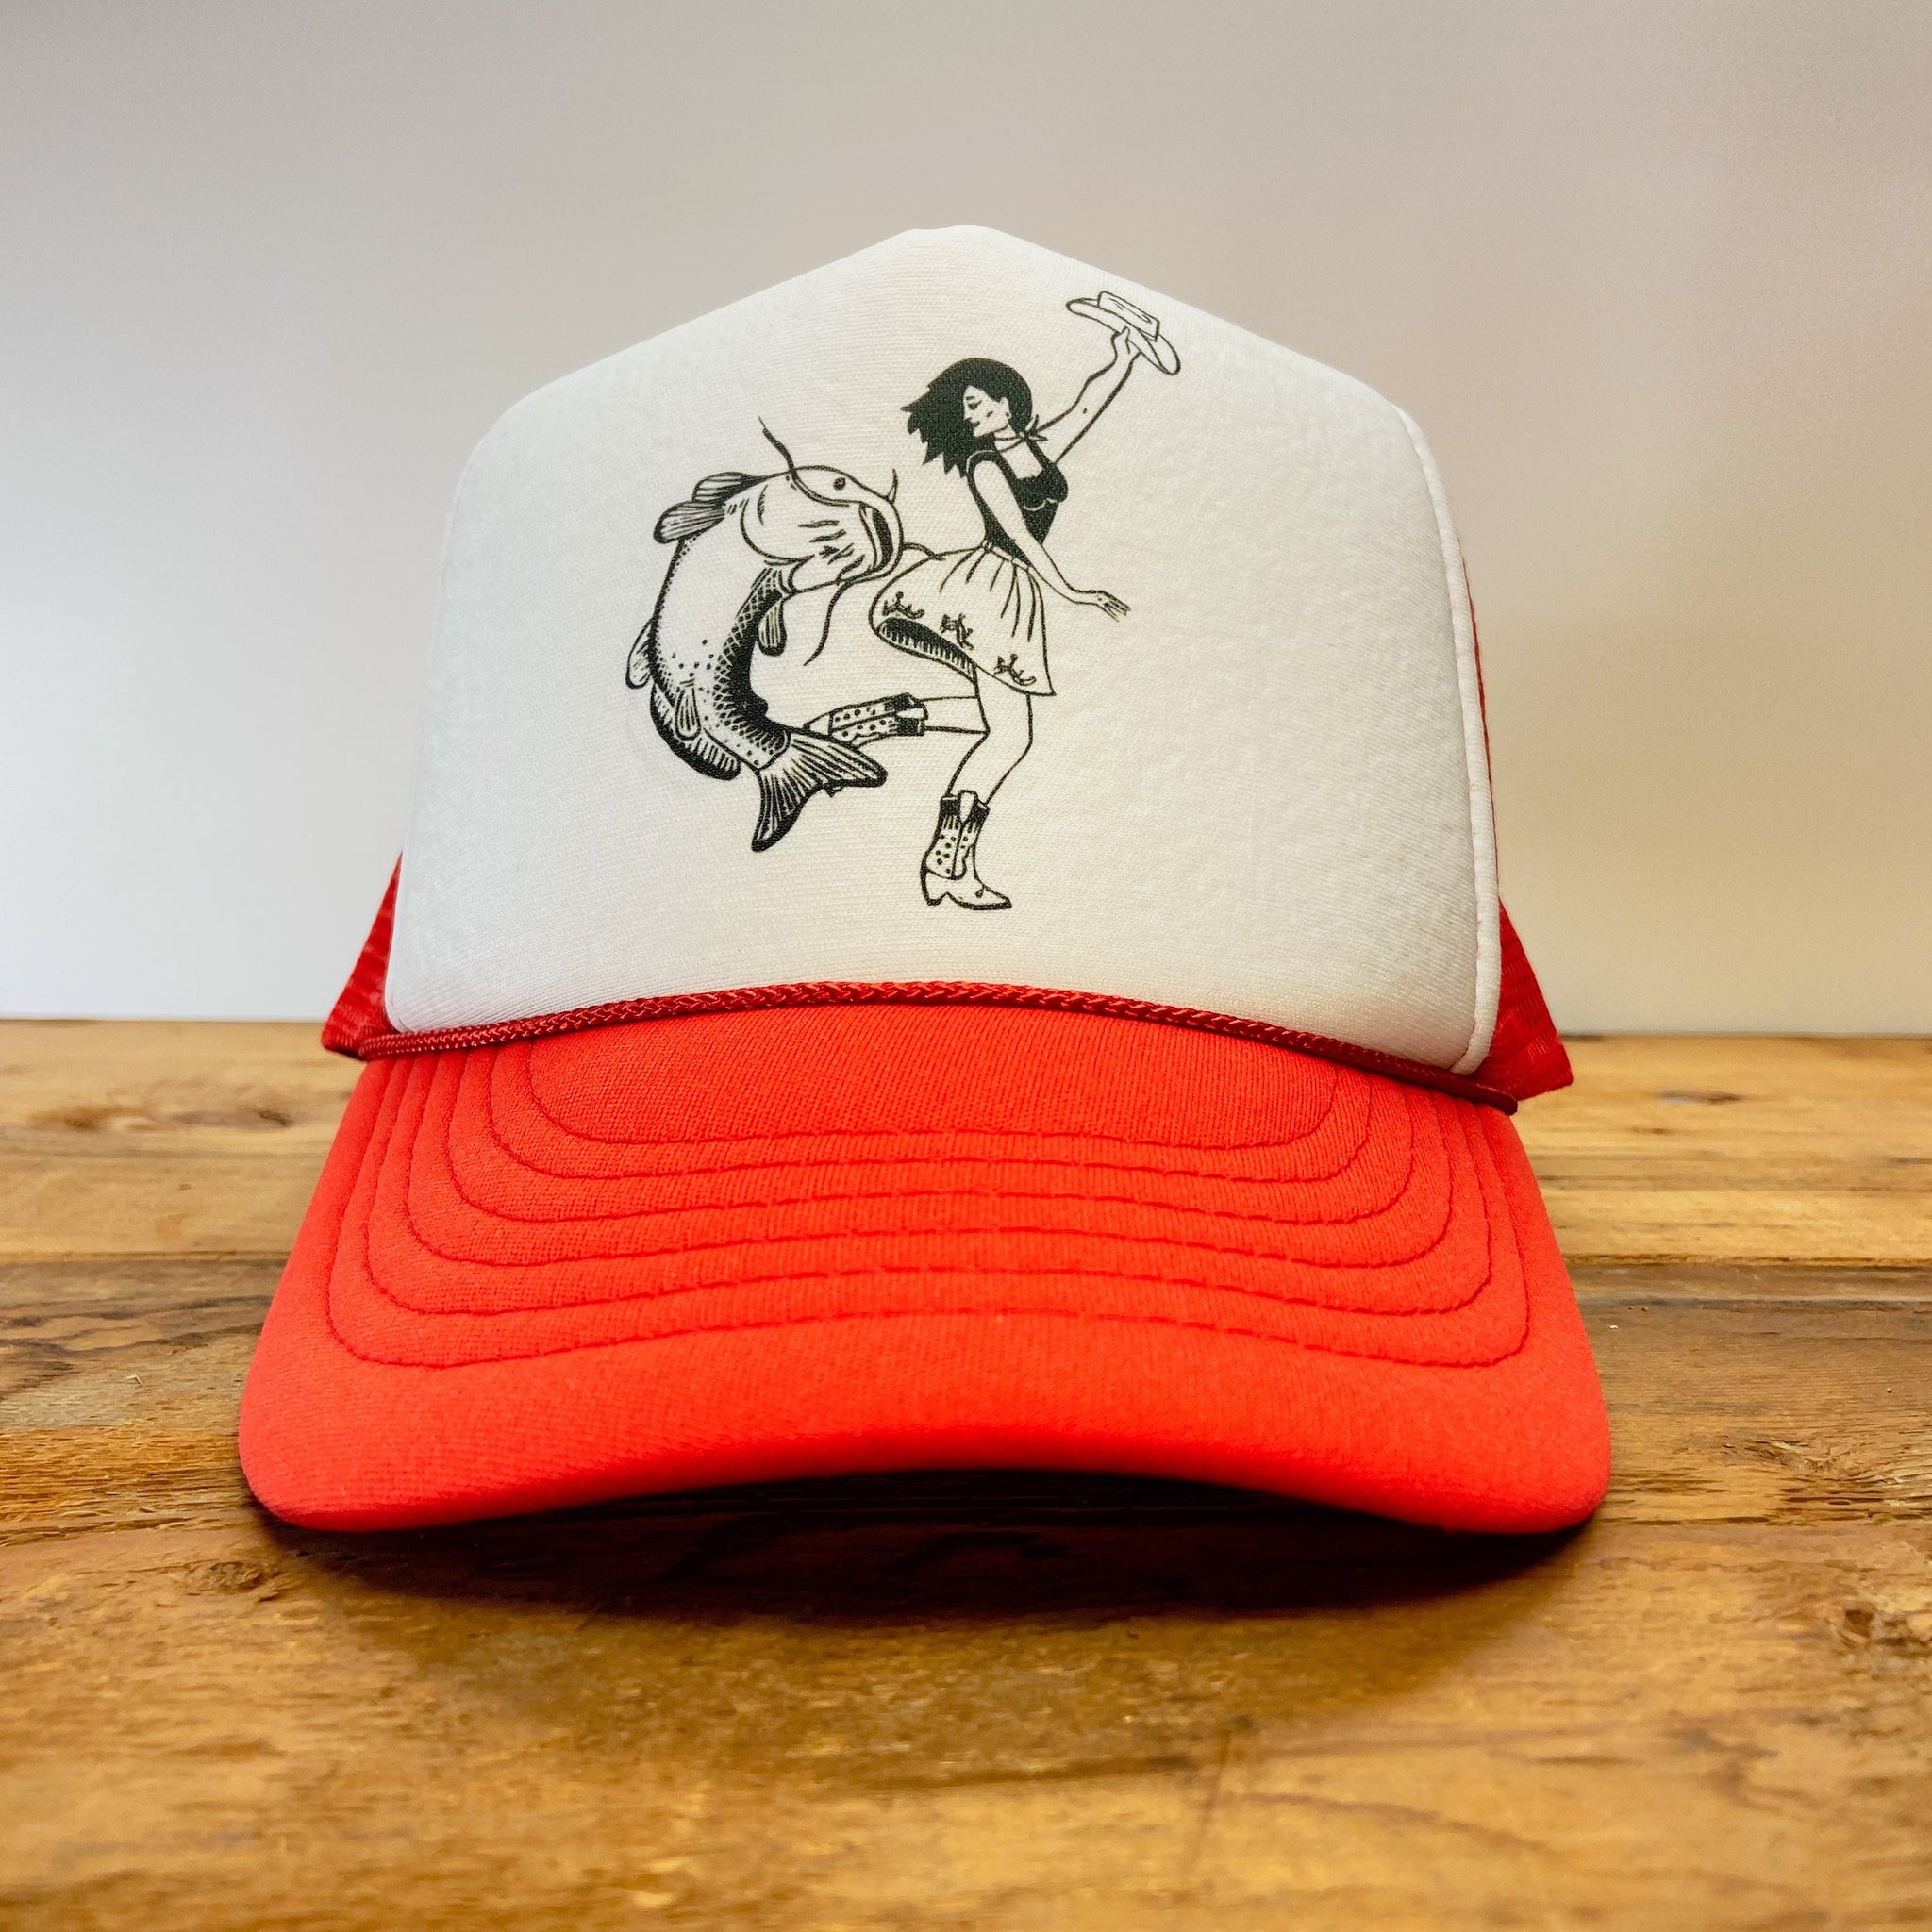 Catfish Caps & Hats, Unique Designs